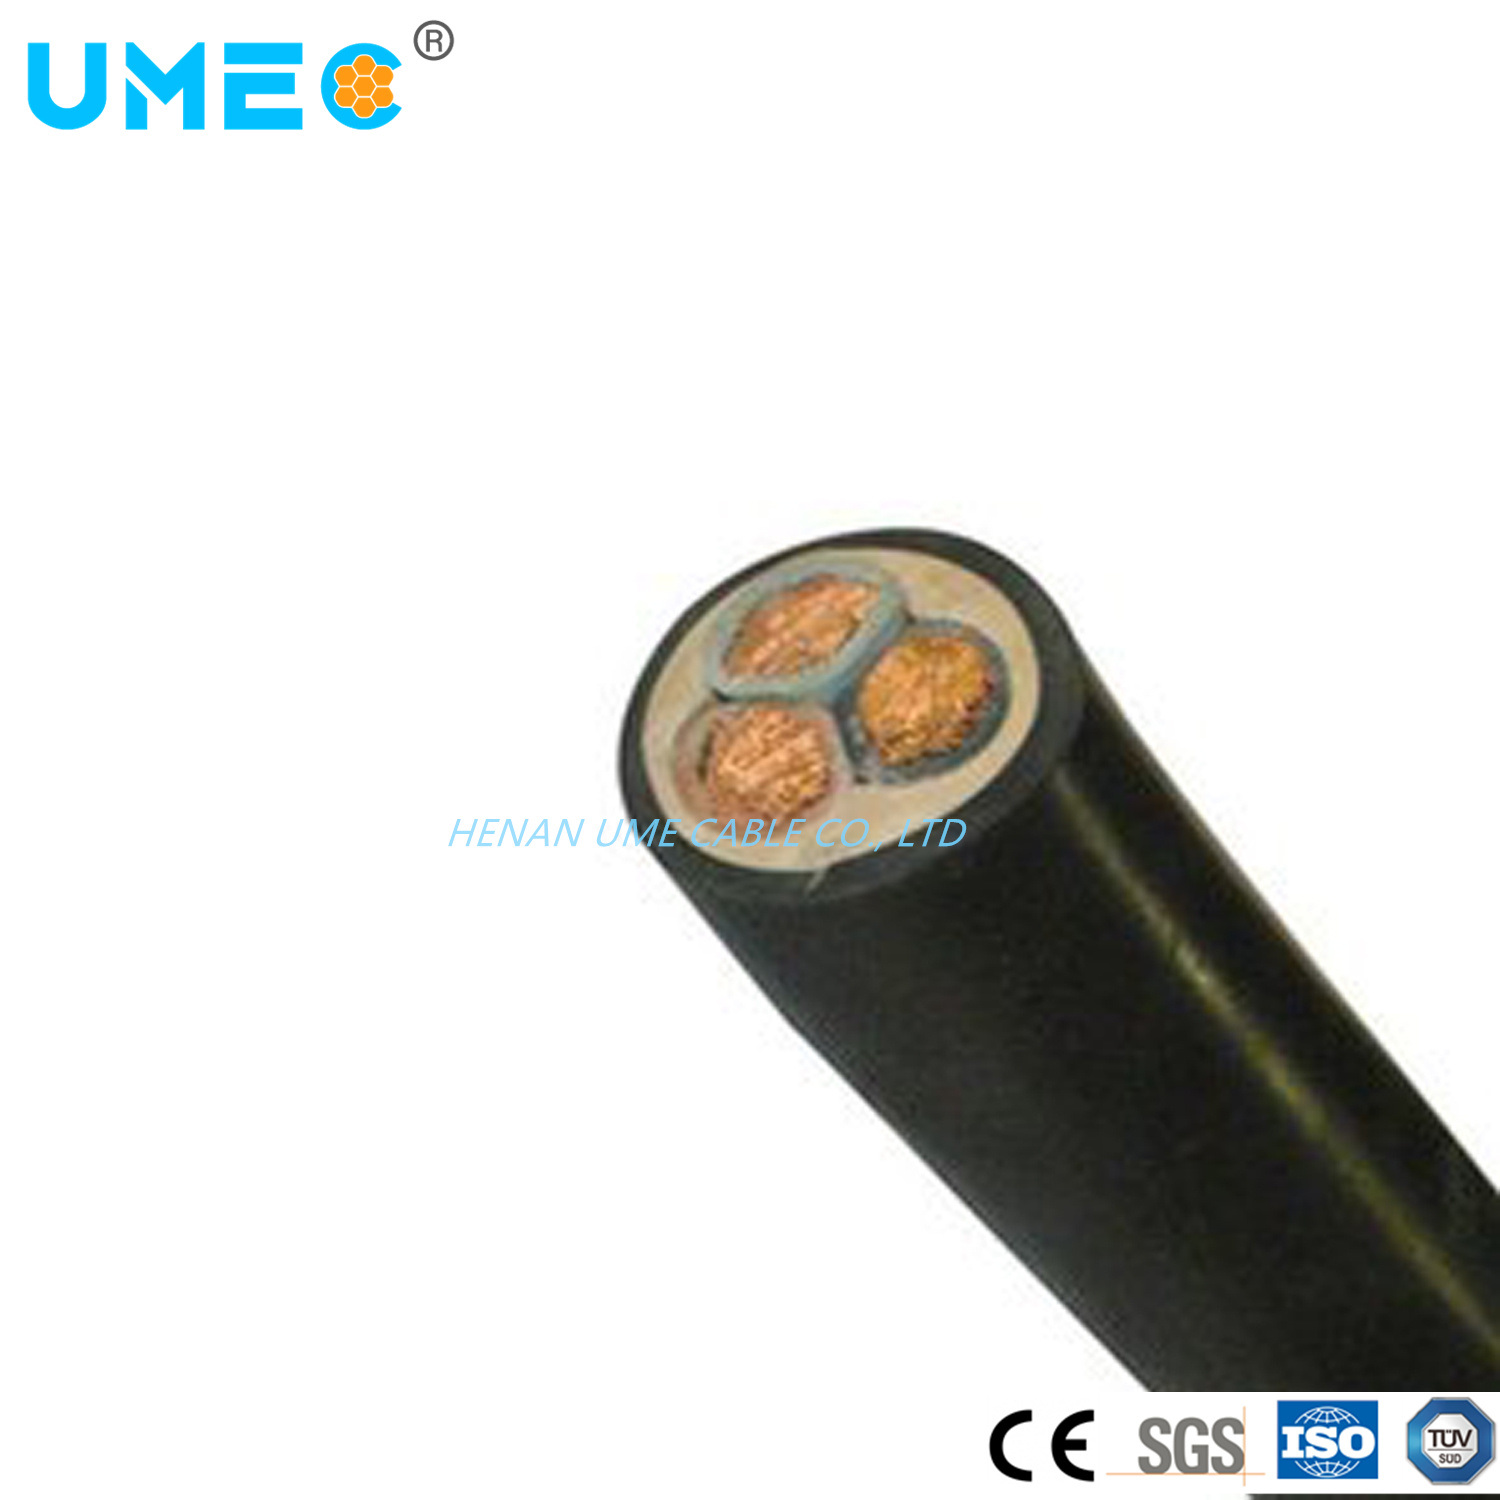 
                Câble de gaine en caoutchouc pour isolation EPR à conducteur en cuivre standard CEI GB
            